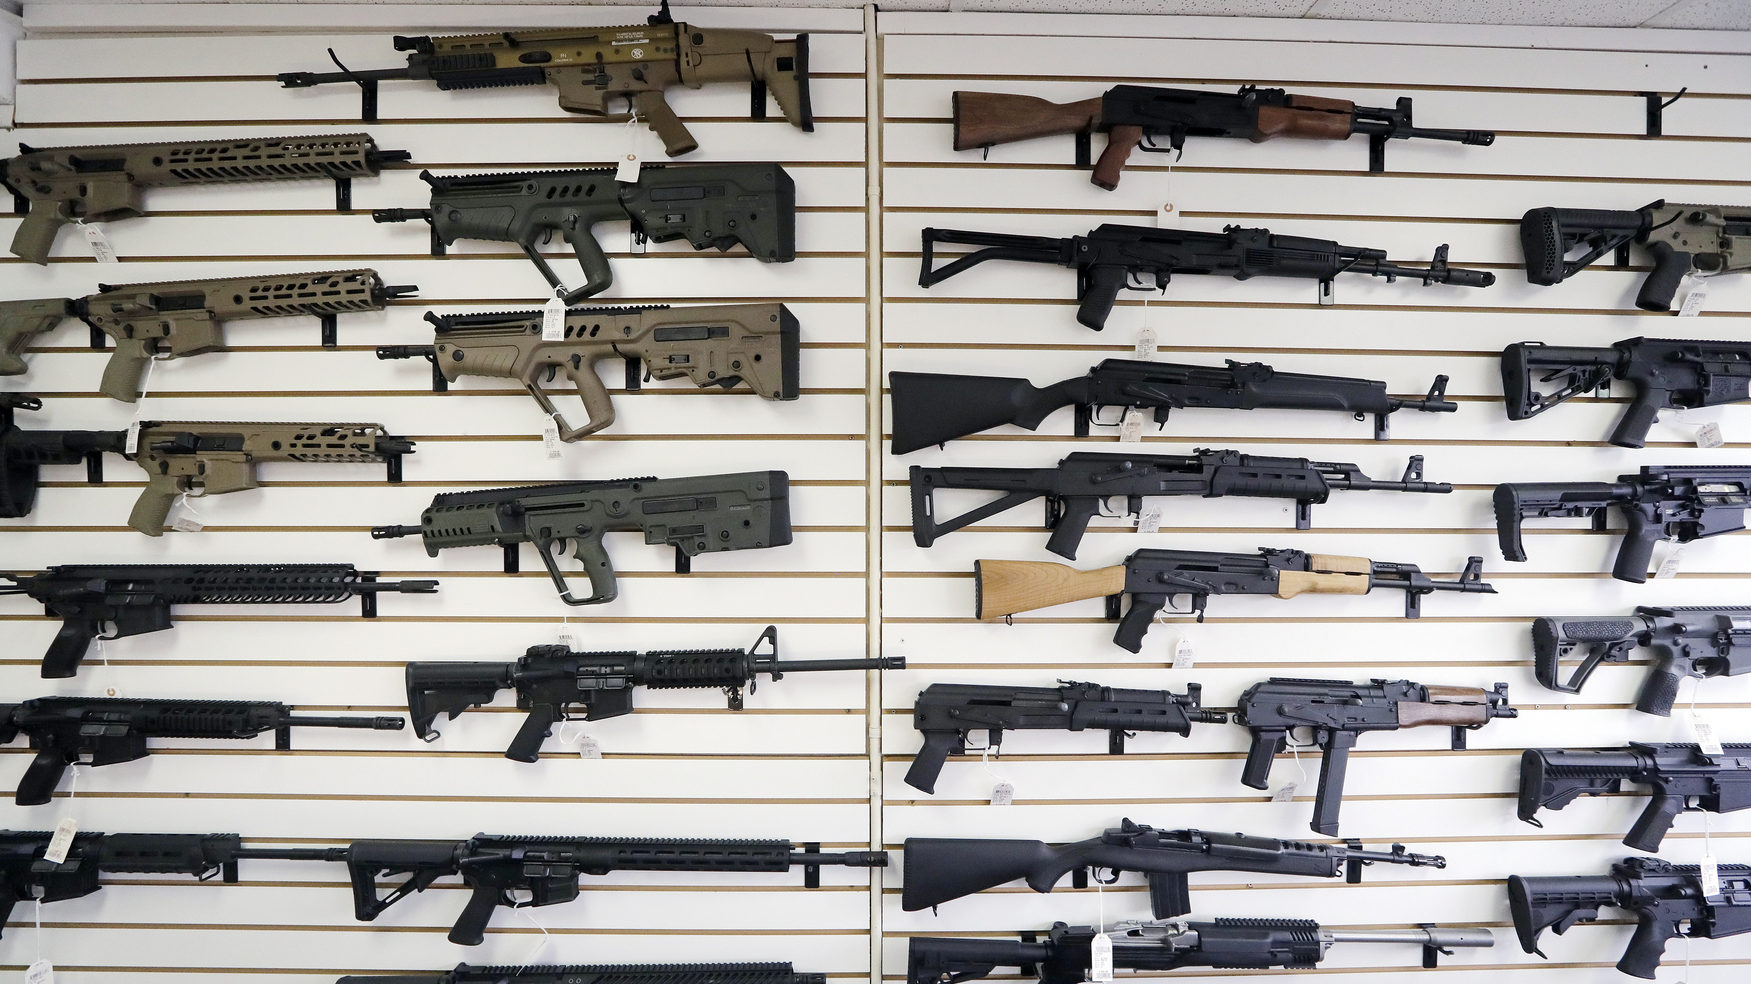 guns on a wall at a gun shop...